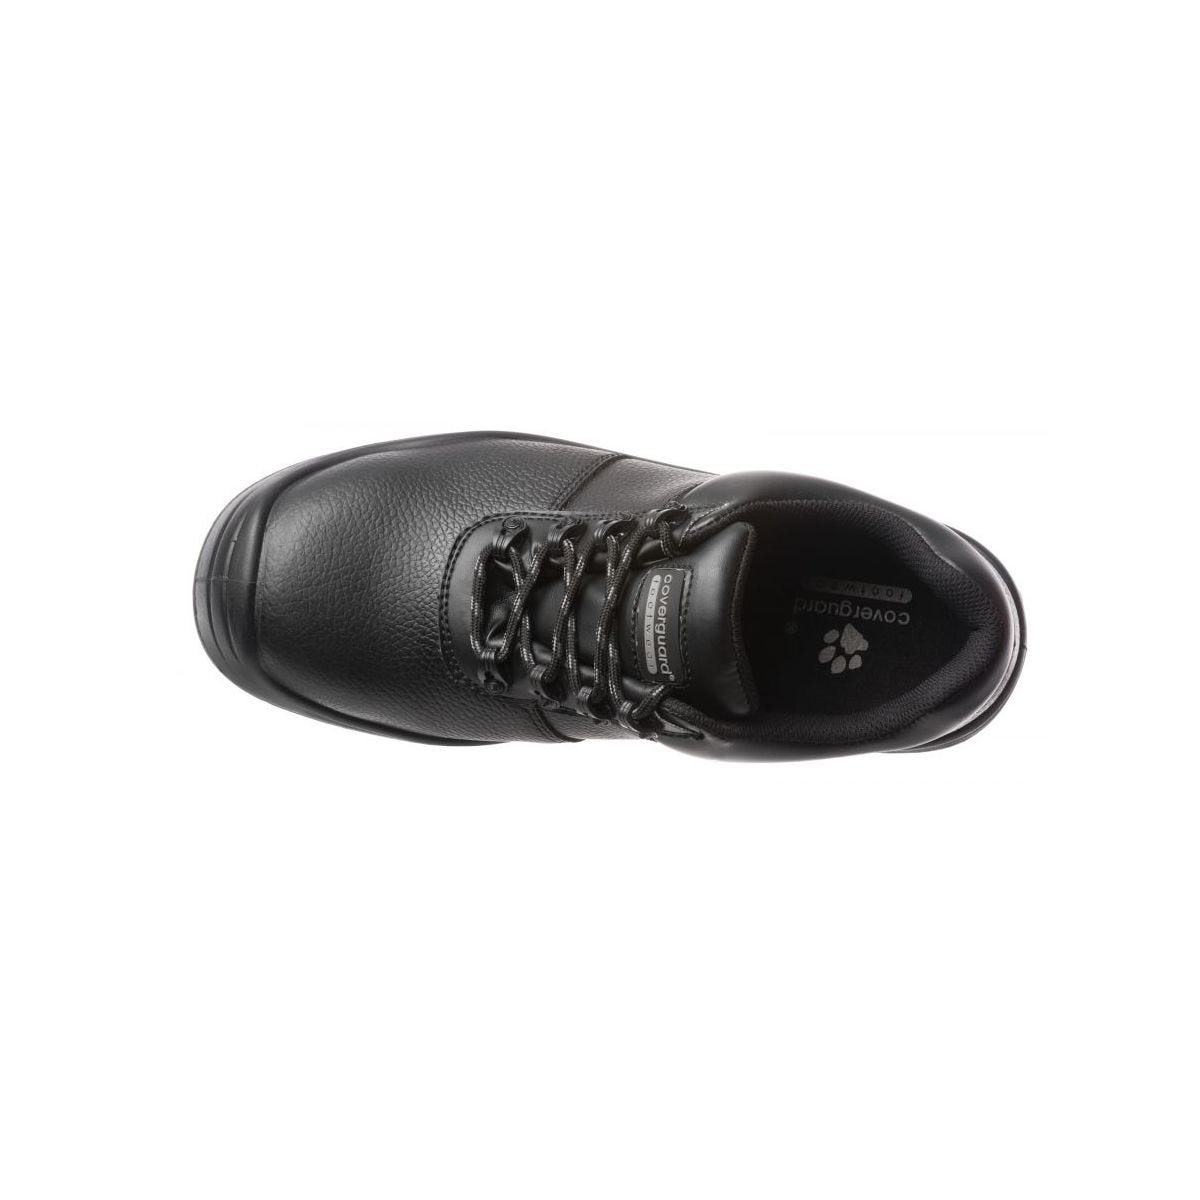 Chaussures de sécurité basses FREEDITE S3 SRC - Coverguard - Taille 42 2